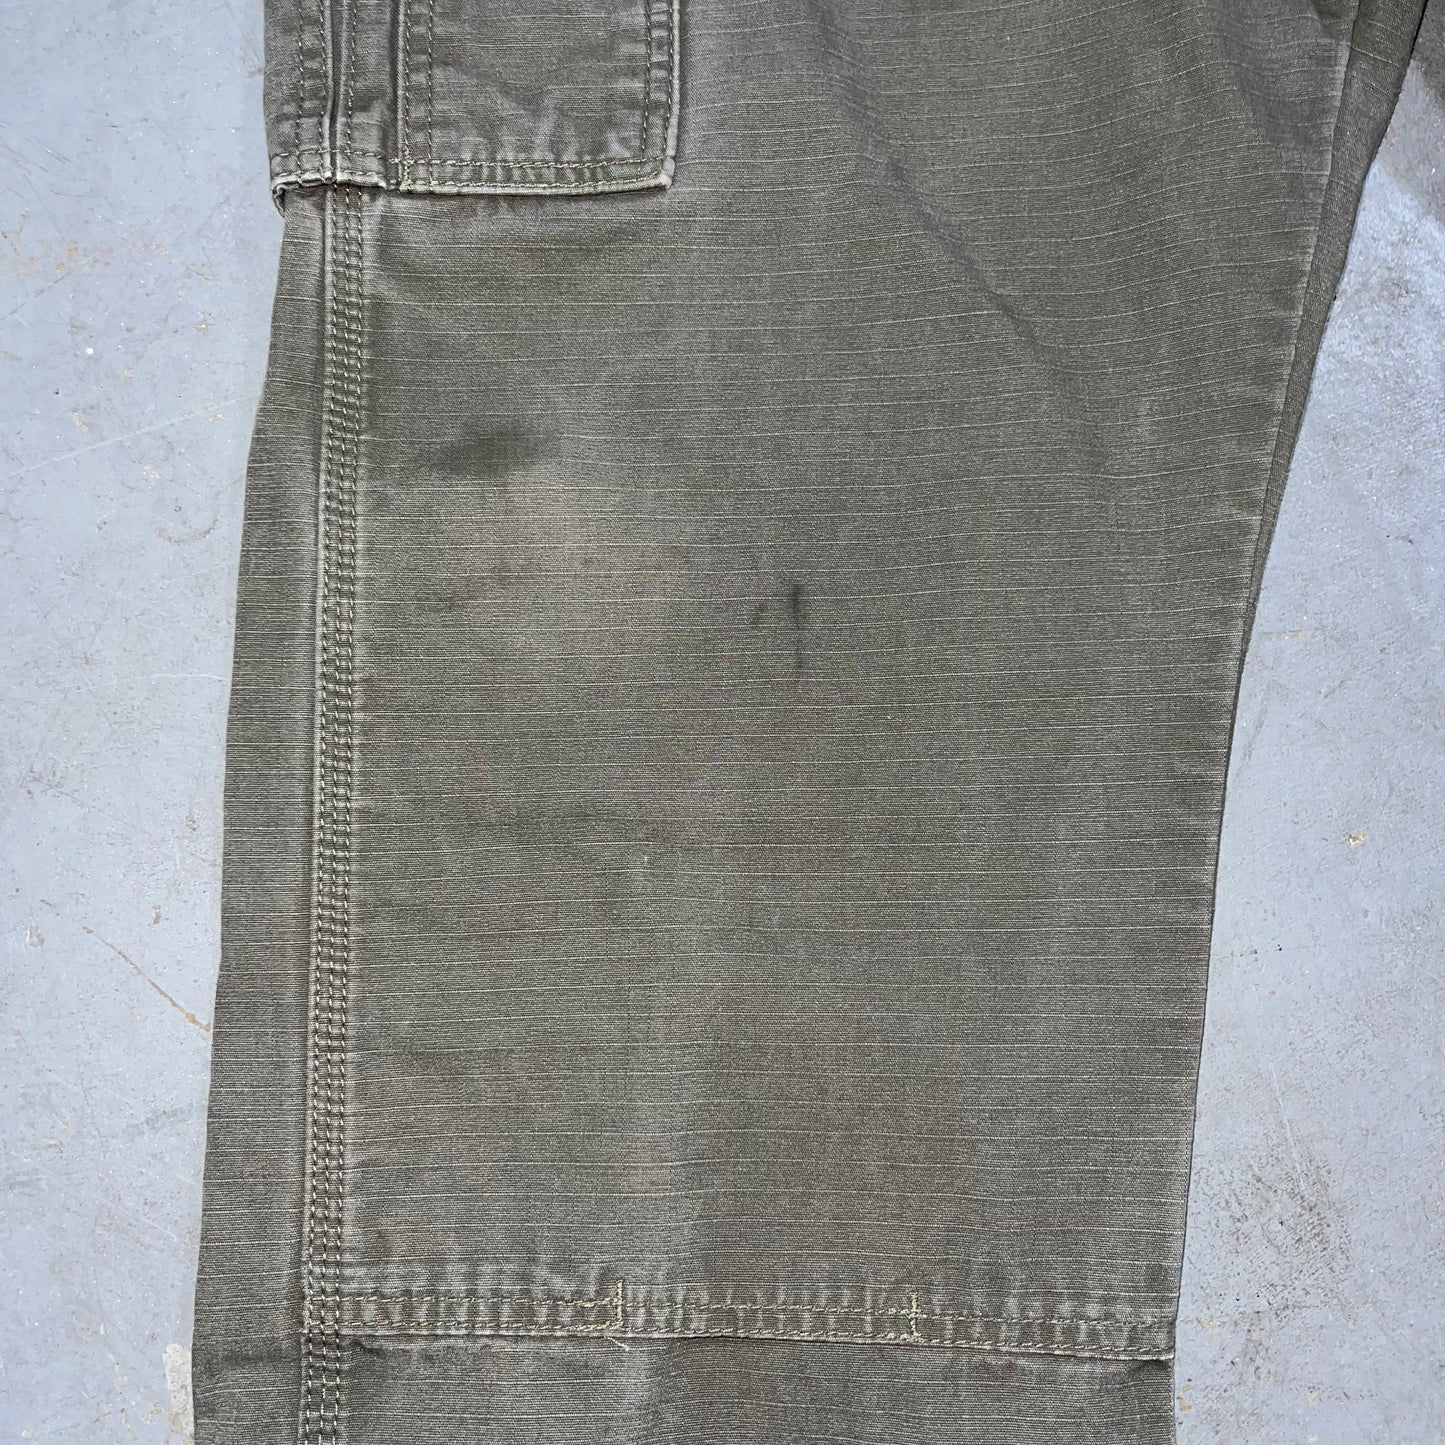 Wrangler Riggs Workwear 3W060LD Cargo Pants. Size 38x30